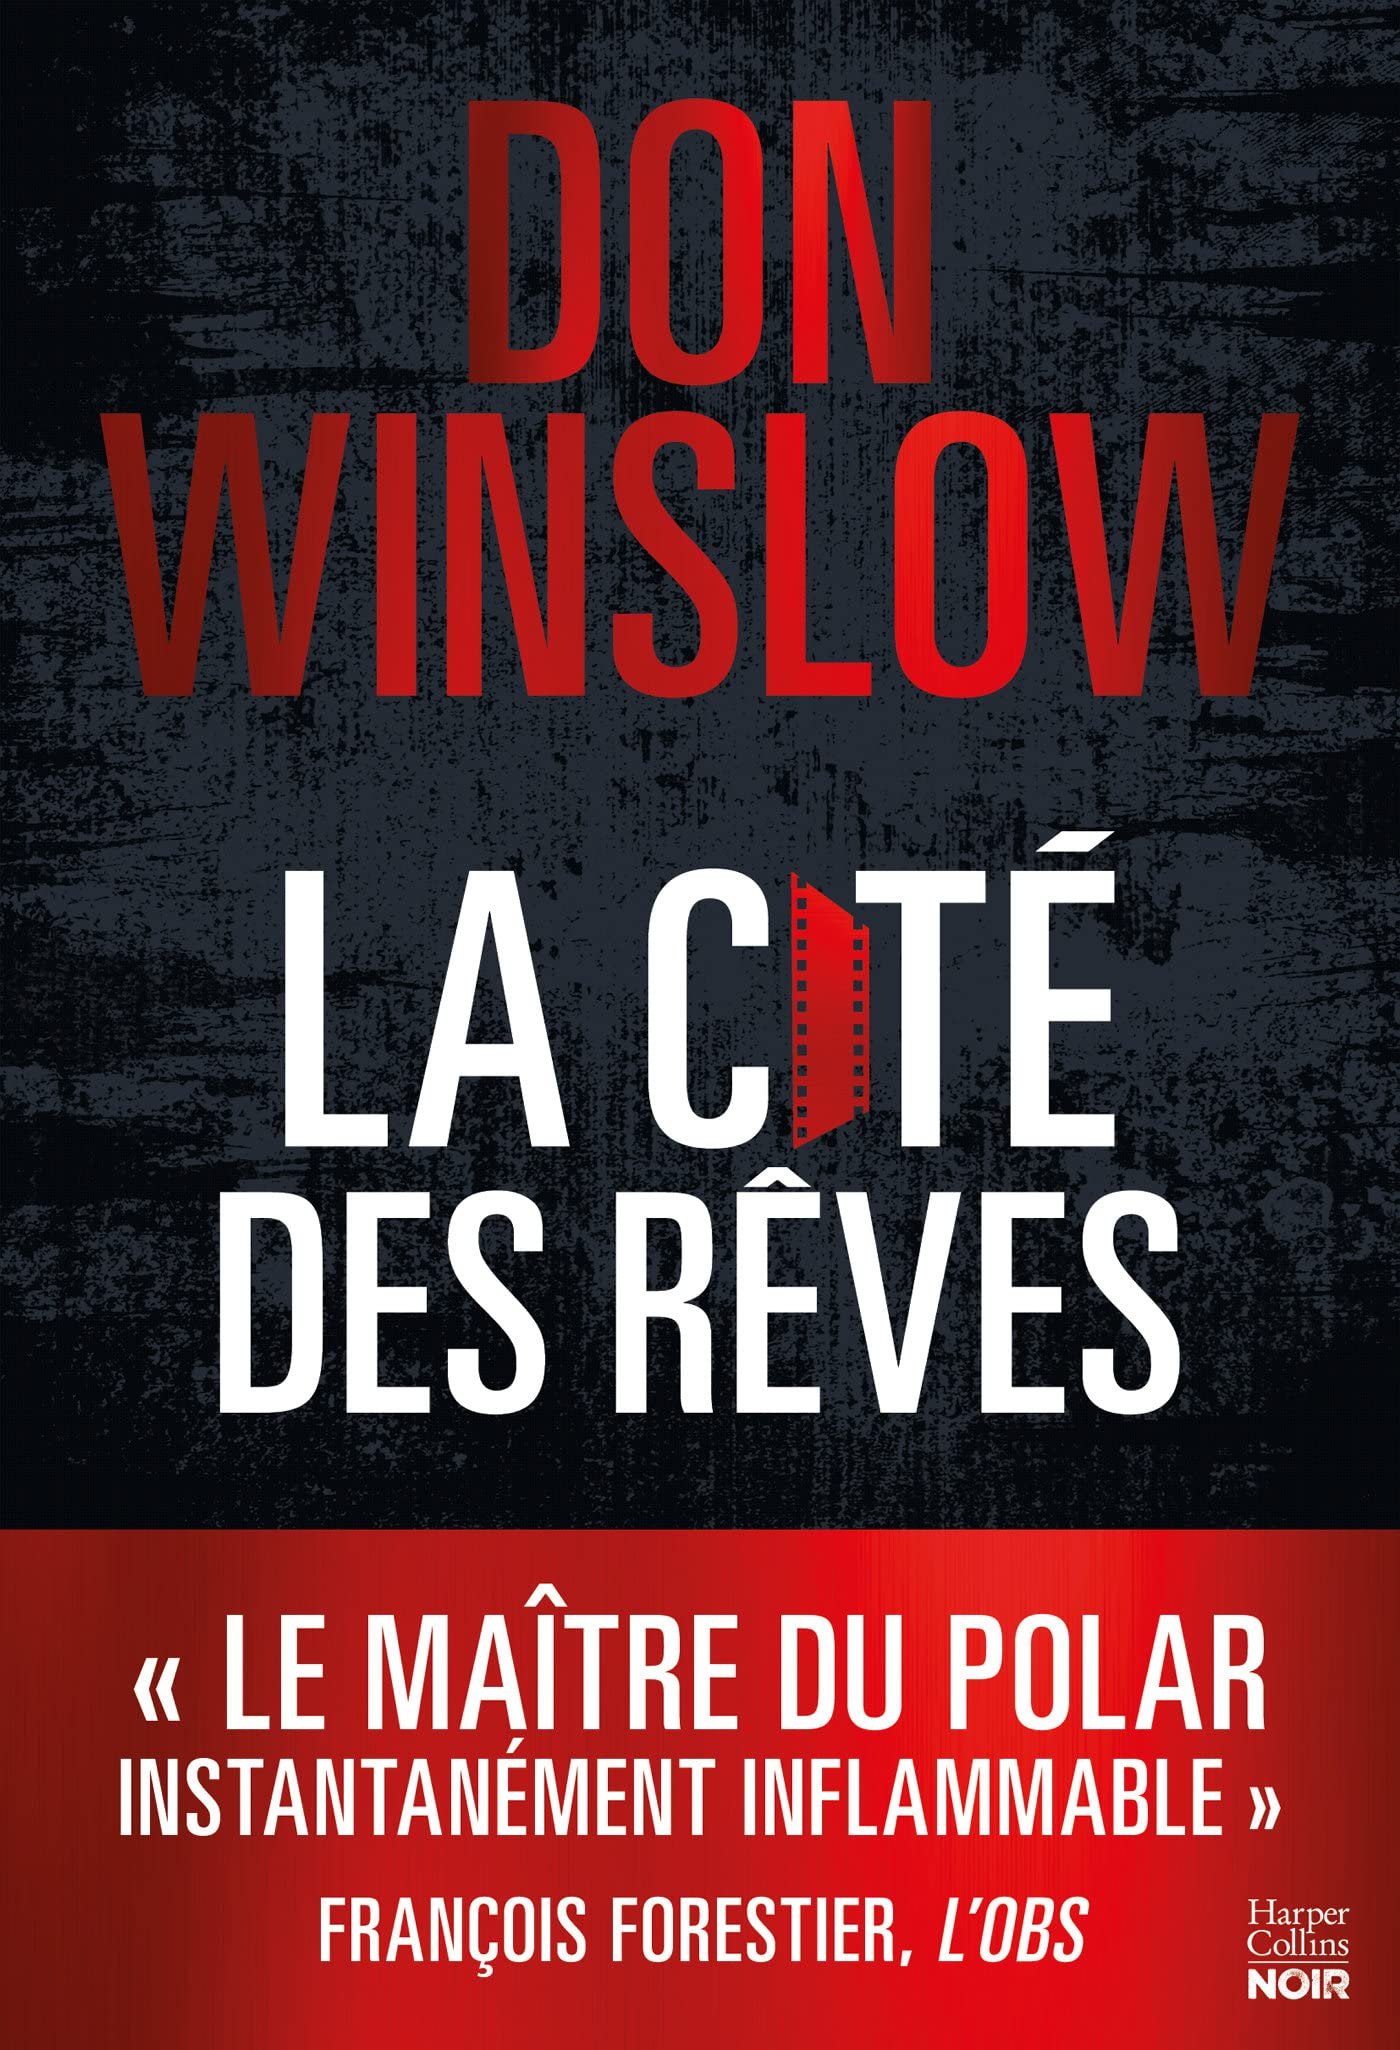 Don Winslow – La cité des rêves